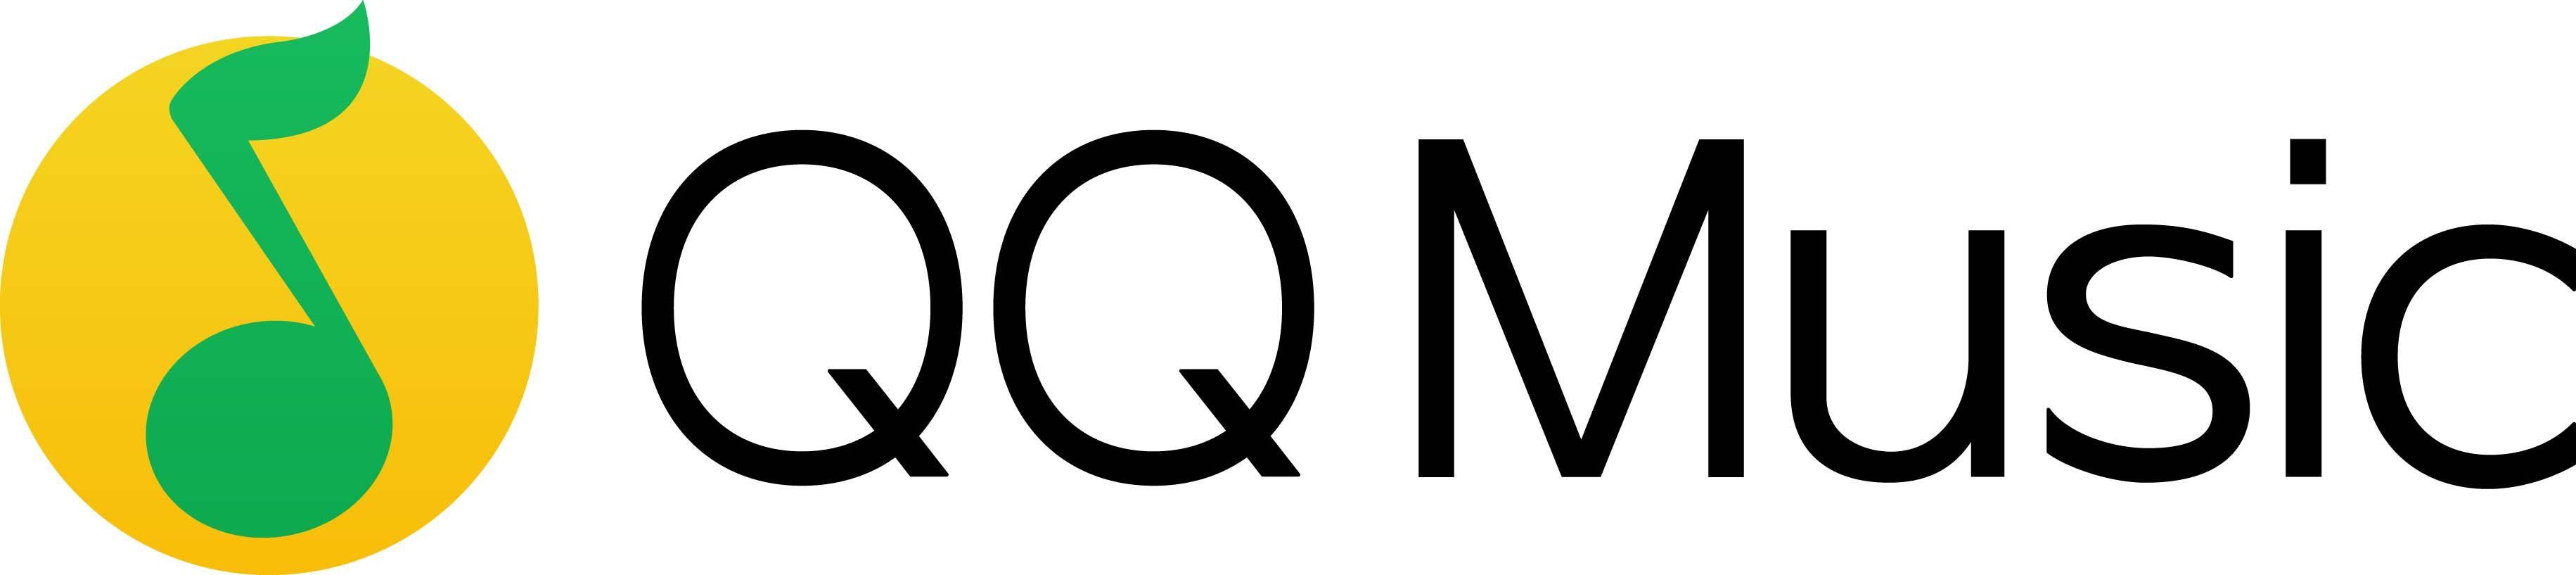 Tencent QQ Logo - Tencent / QQ Music